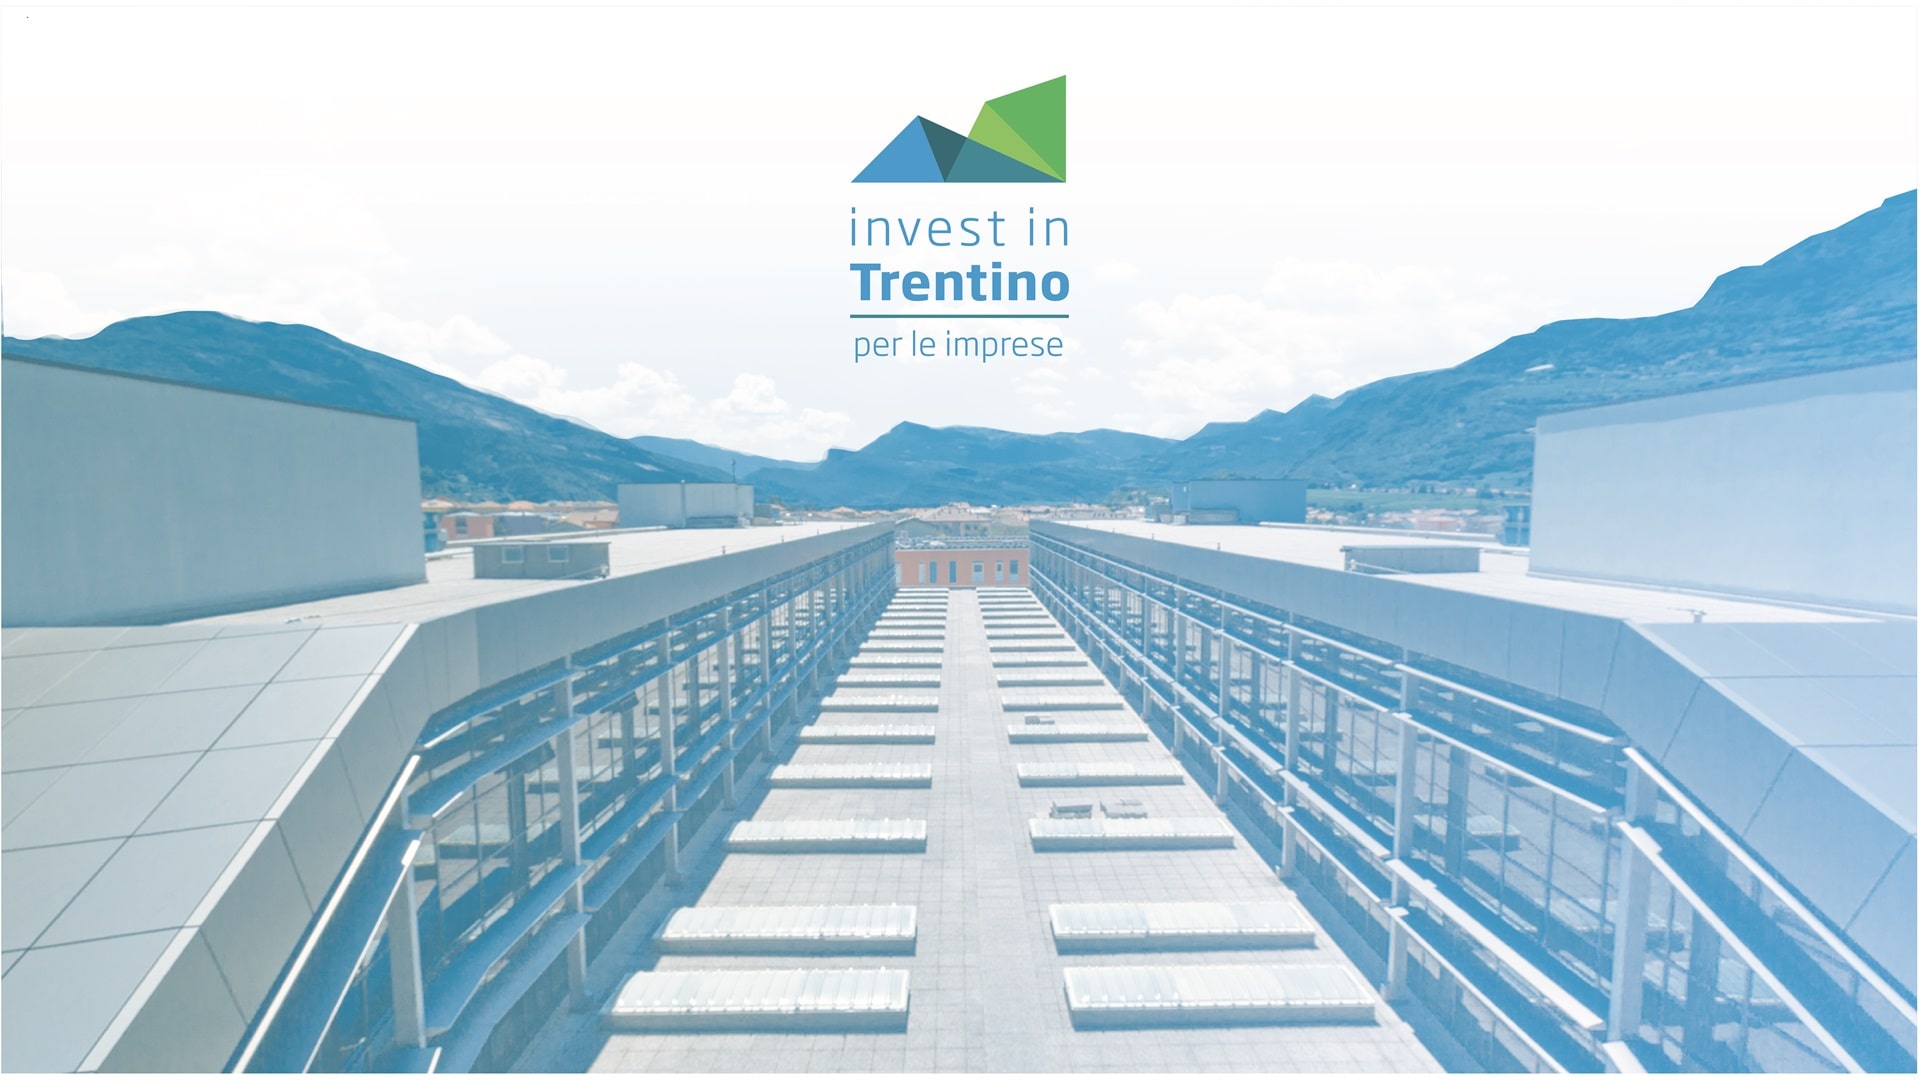 Invest in Trentino - per le imprese